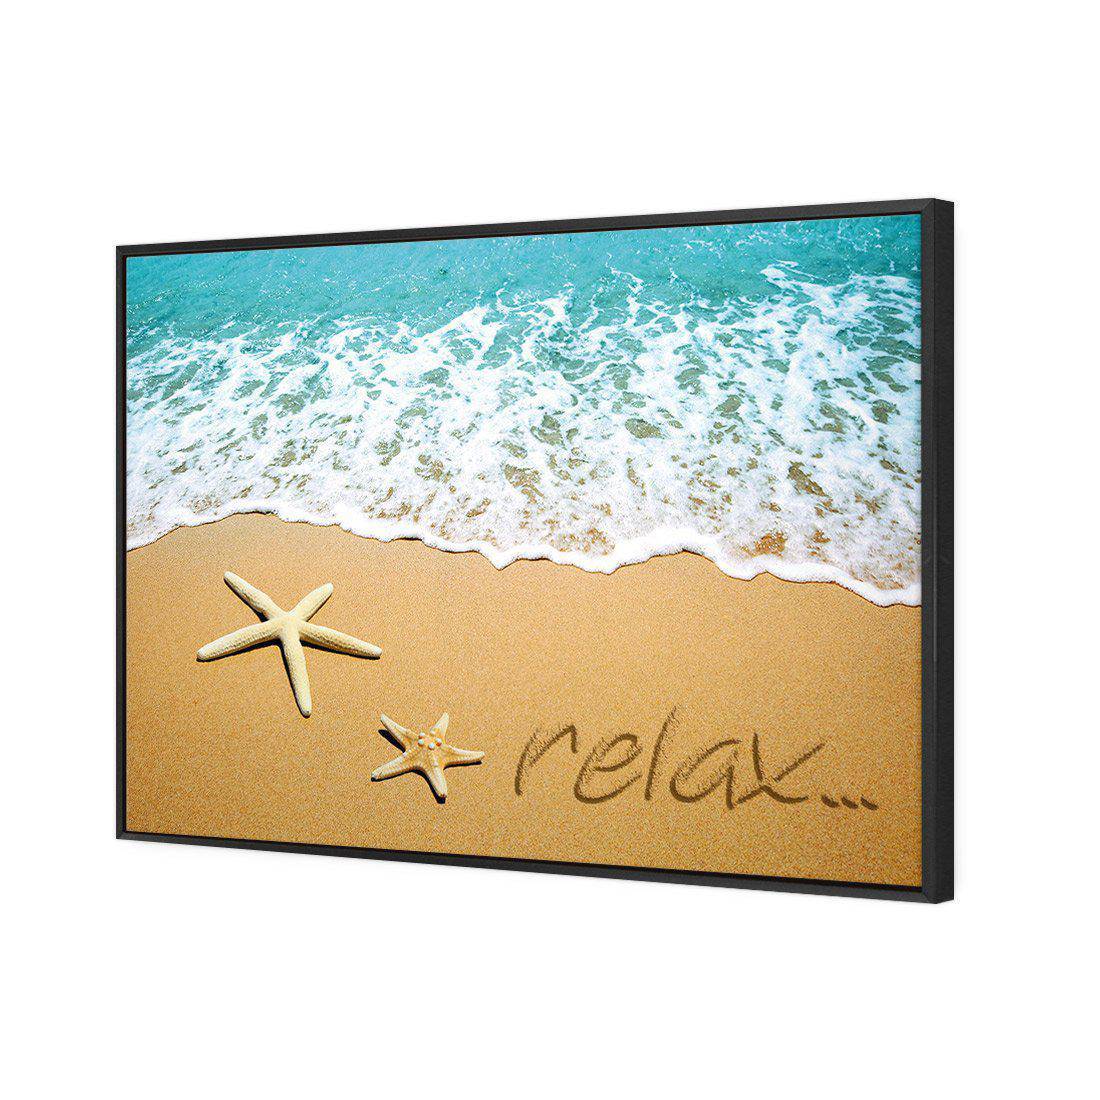 Relax Inspire Canvas Art-Canvas-Wall Art Designs-45x30cm-Canvas - Black Frame-Wall Art Designs